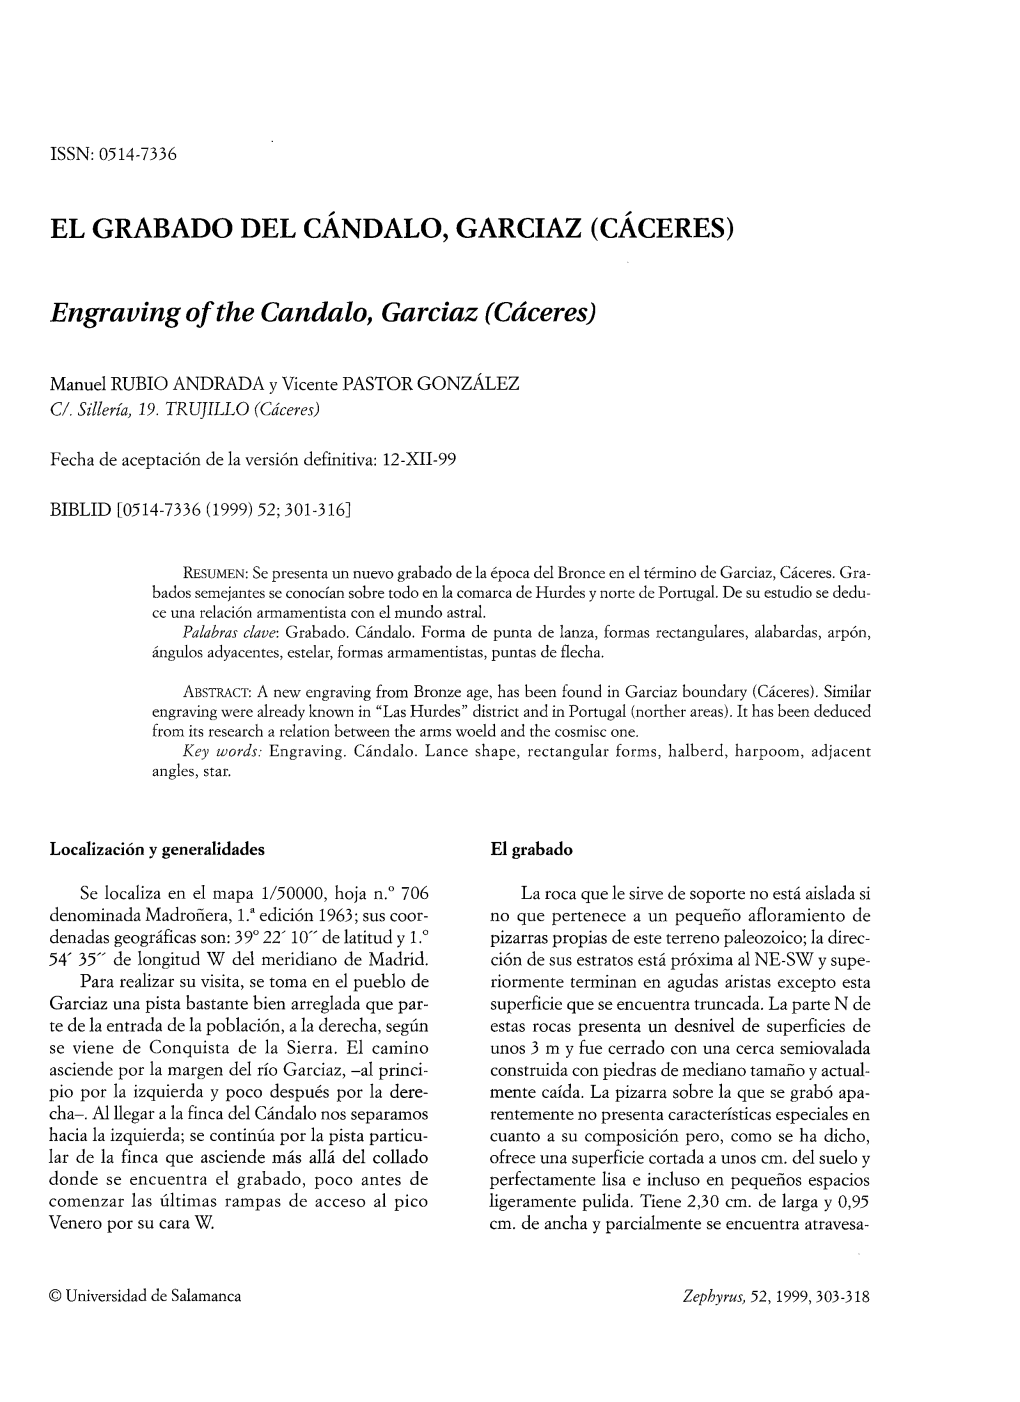 El Grabado Del Cándalo, Garciaz (Cáceres)